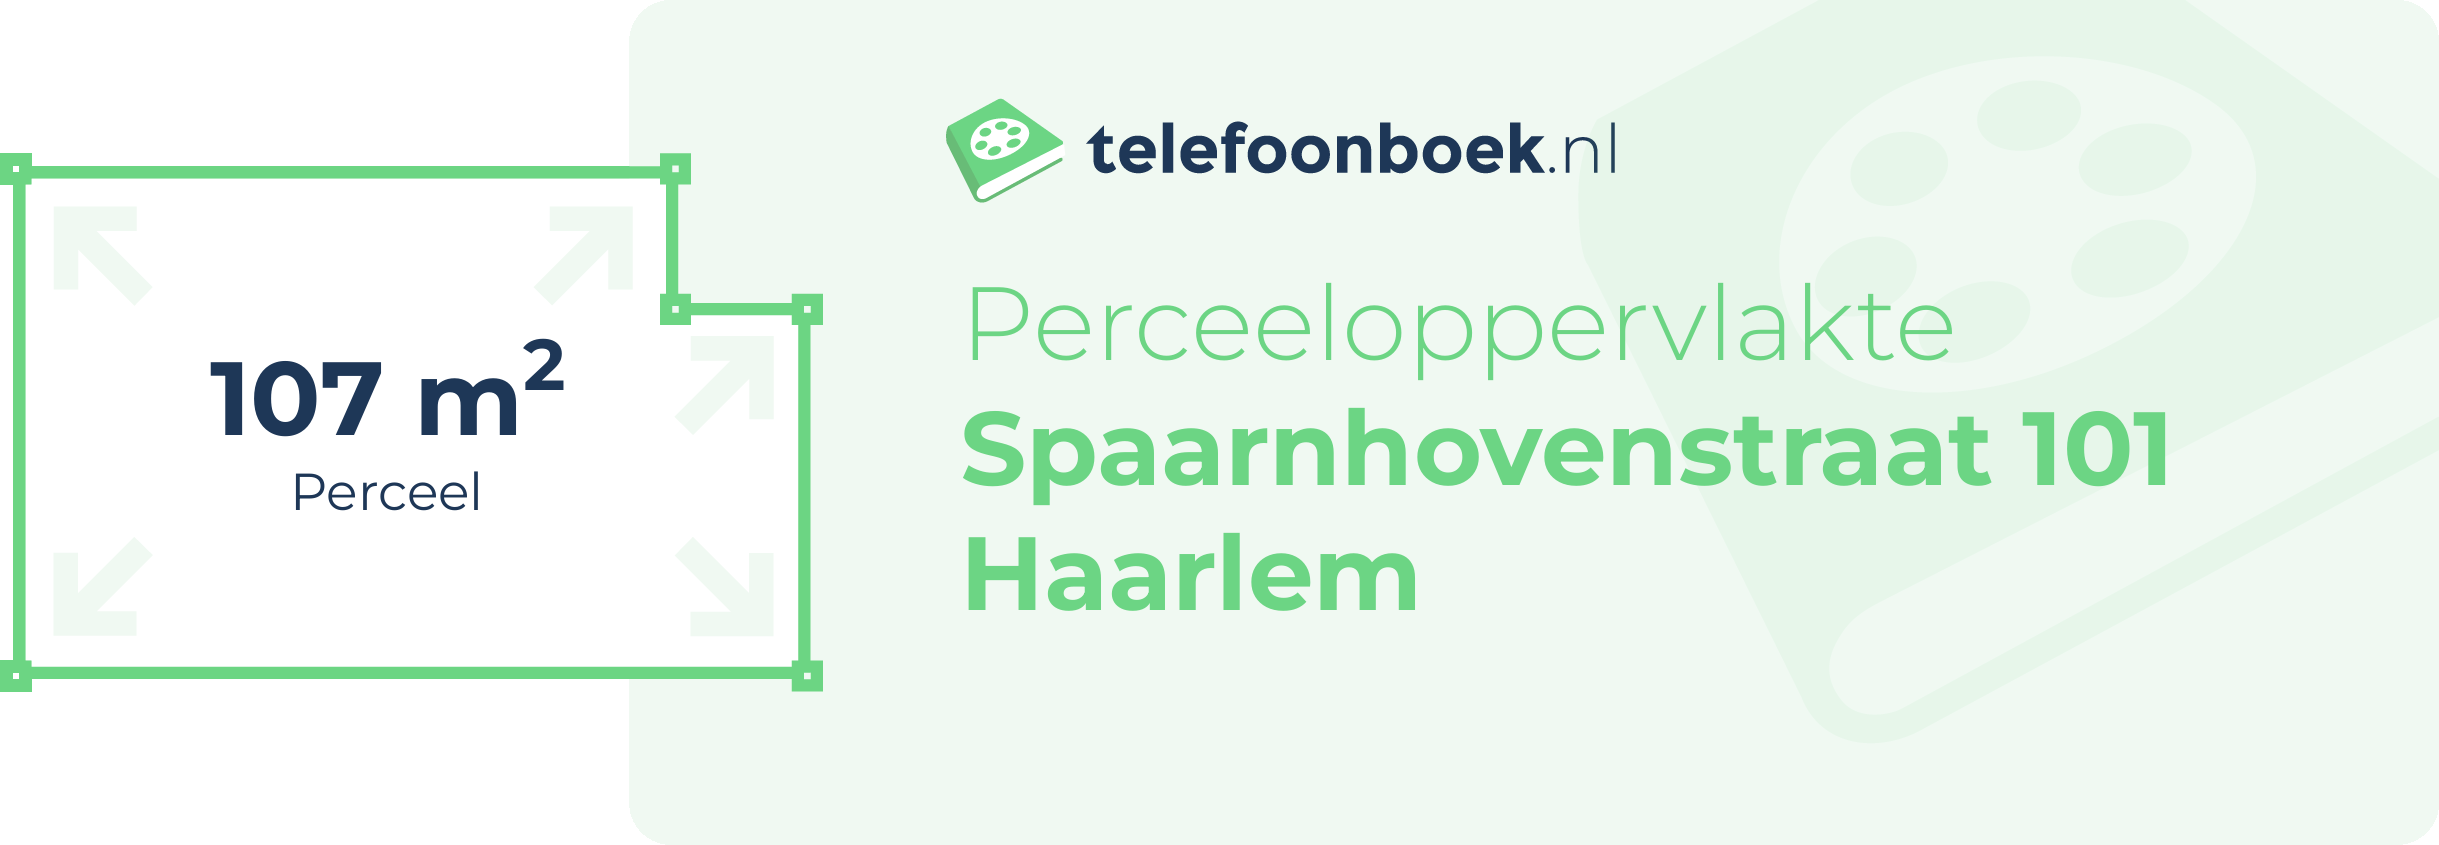 Perceeloppervlakte Spaarnhovenstraat 101 Haarlem